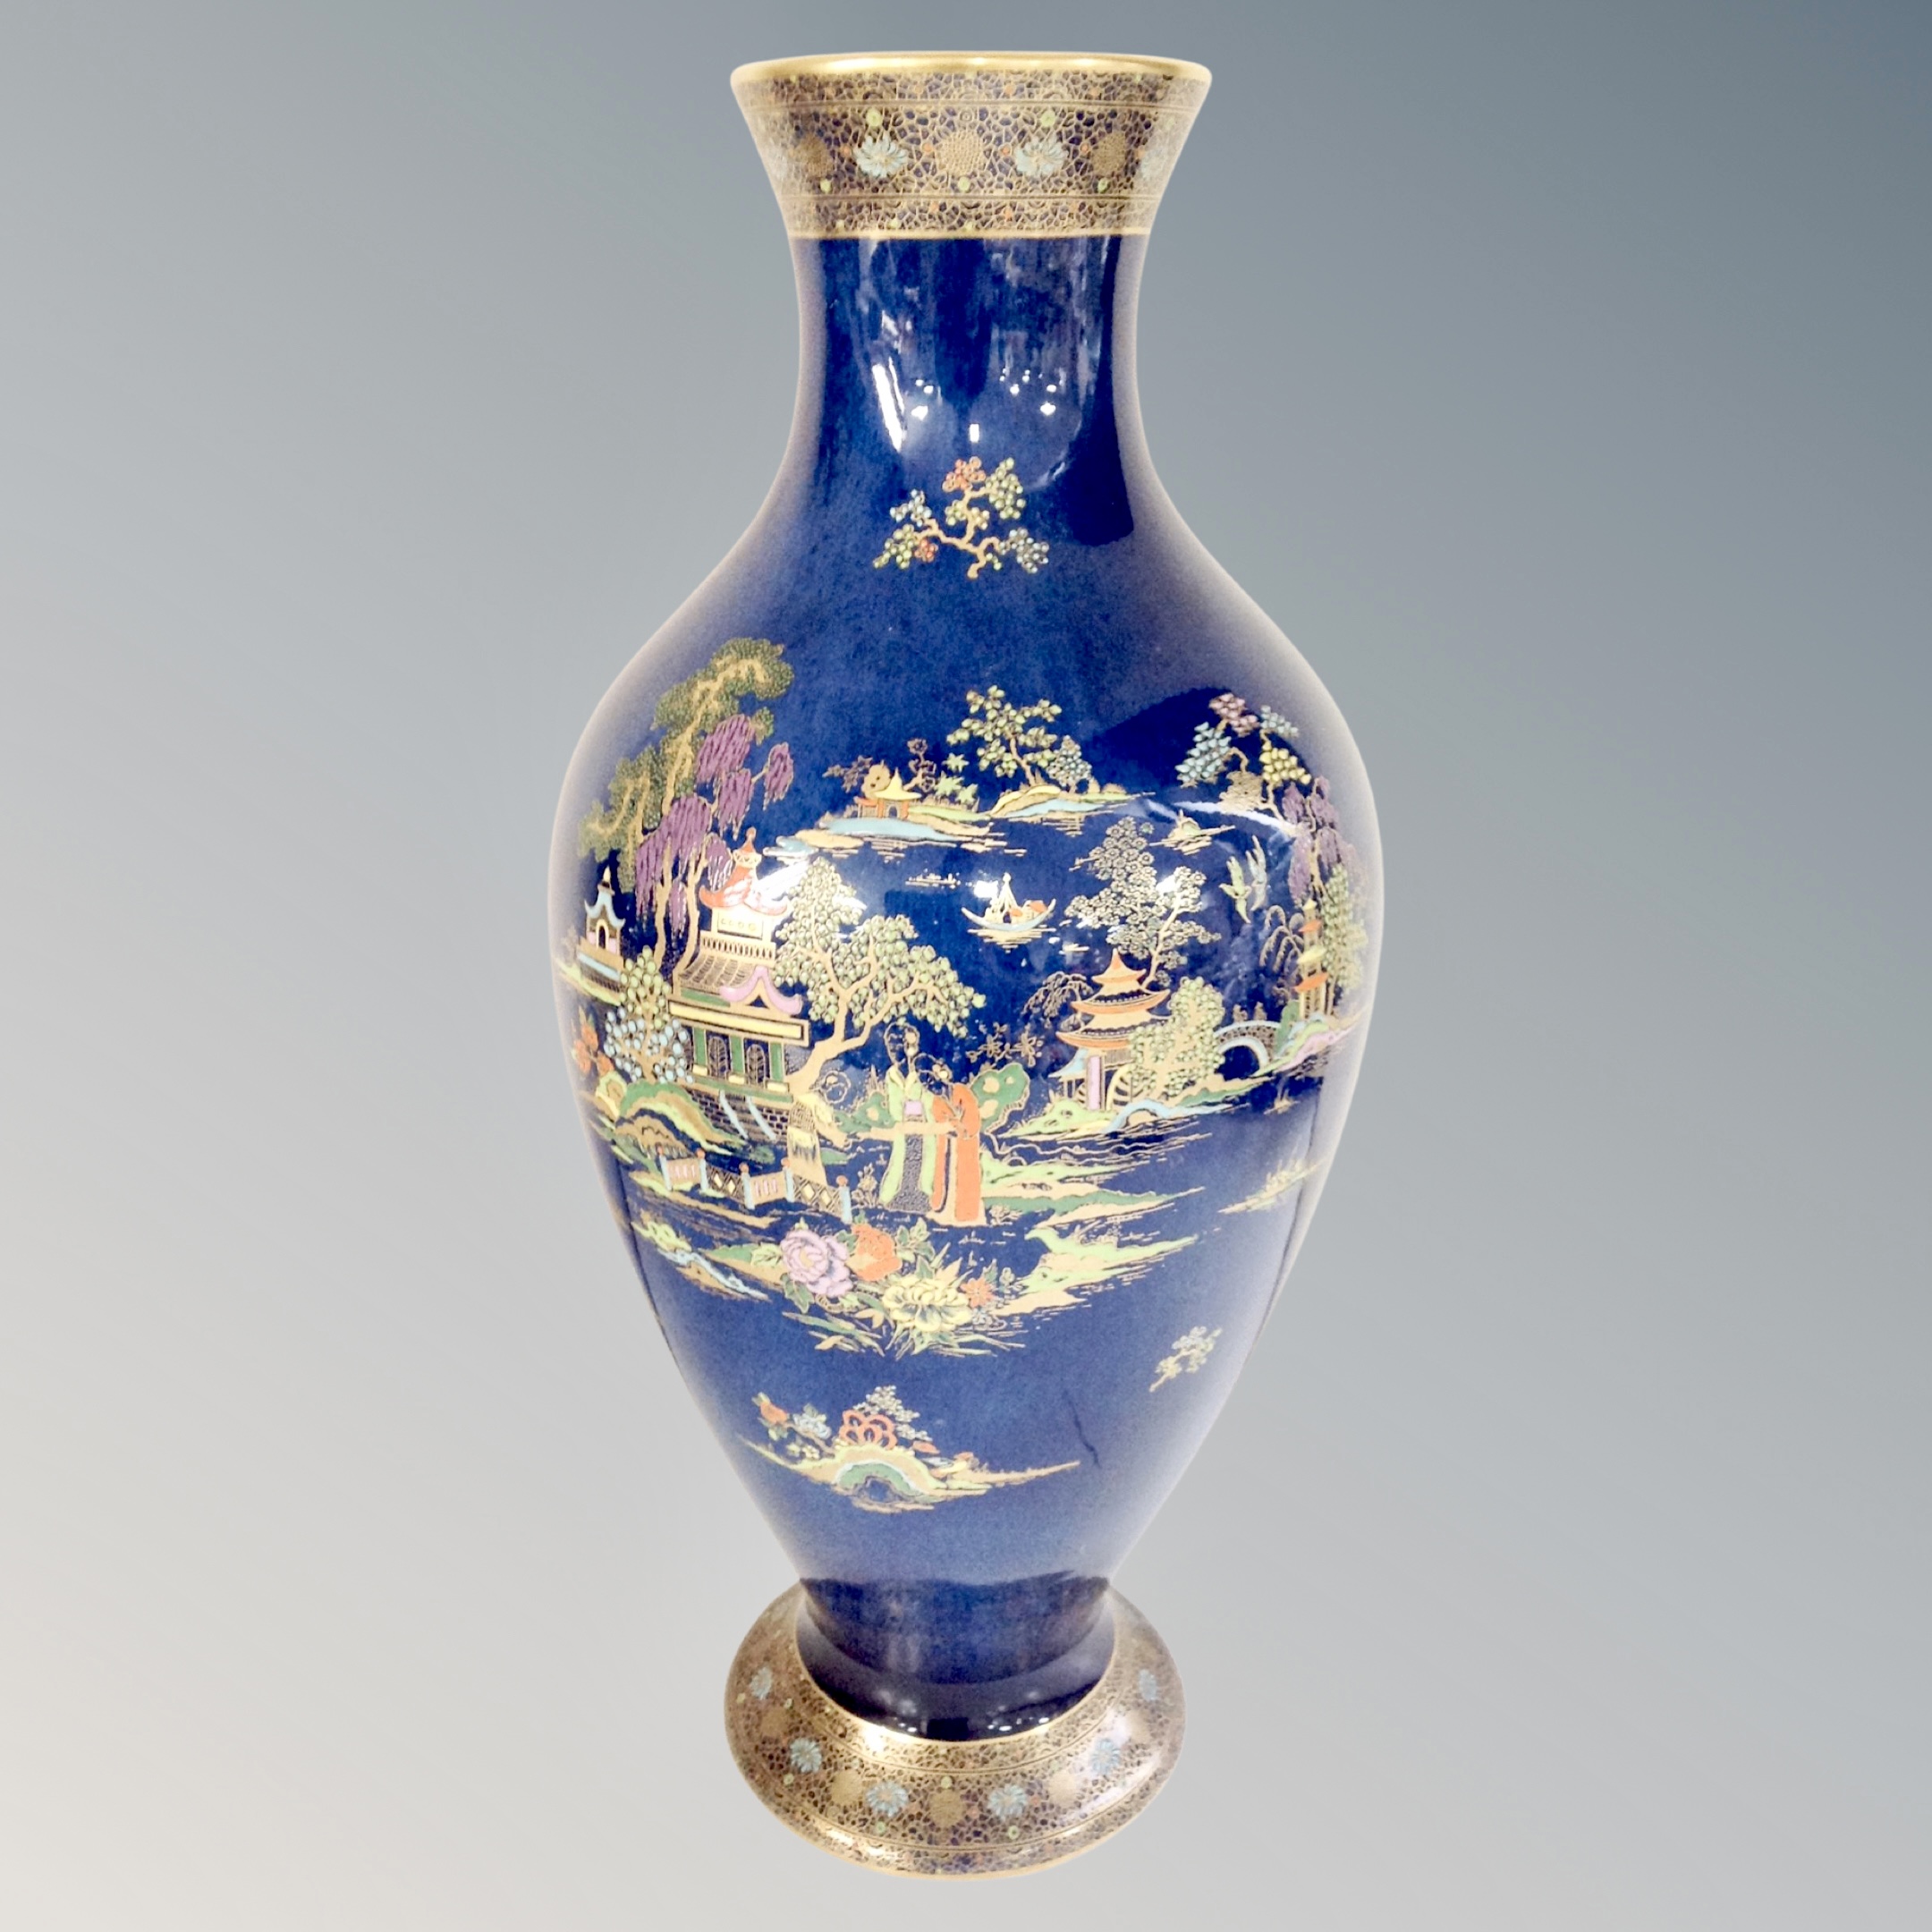 A Crown Devon gilded vase in an oriental style, height 46.